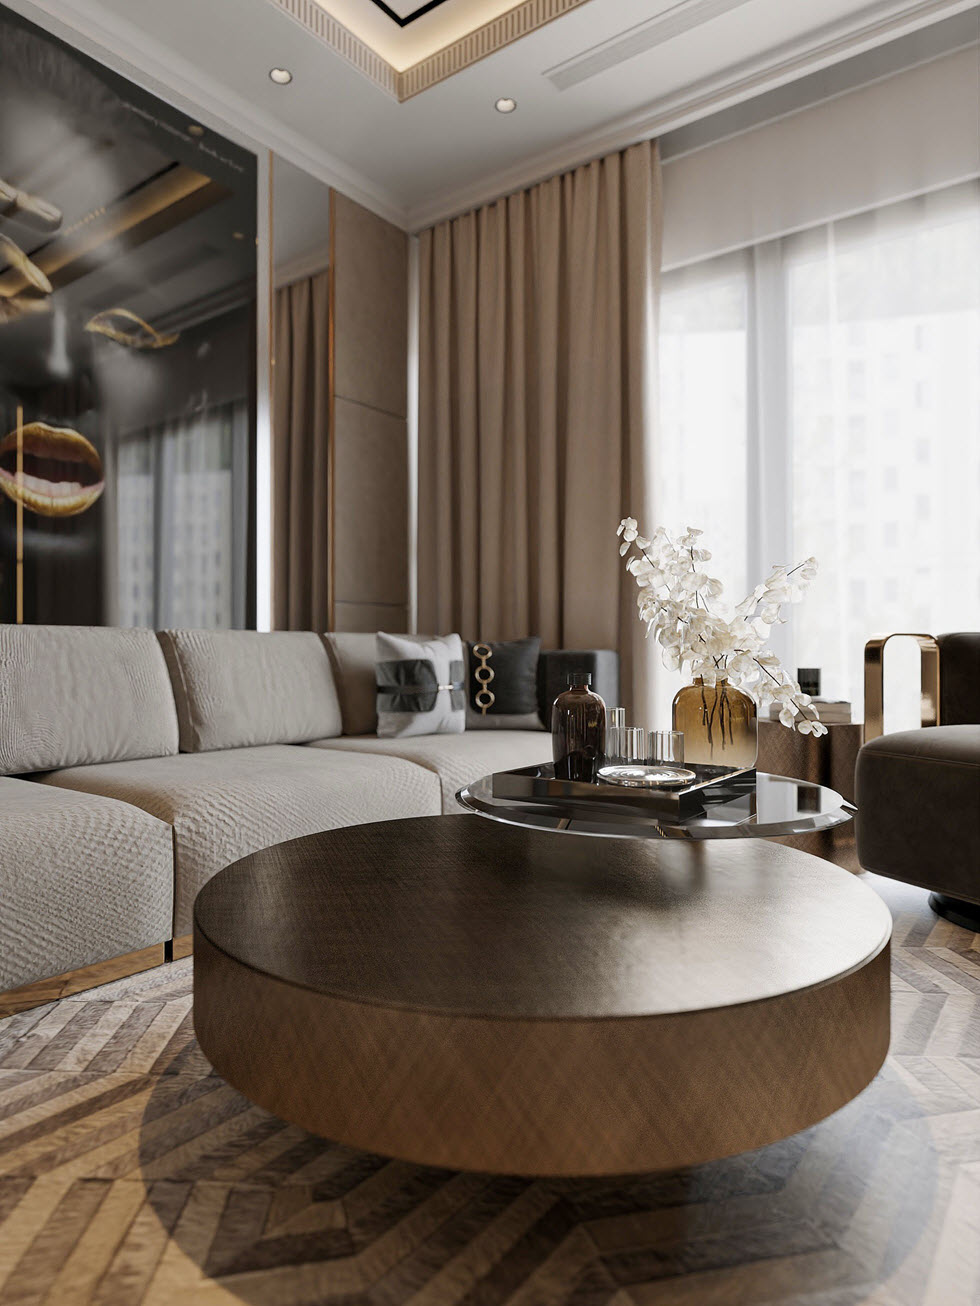 Bàn cà phê hình dạng khối tròn tạo điểm nhấn mềm mại cho không gian phòng khách căn hộ 3 phòng ngủ sang trọng.